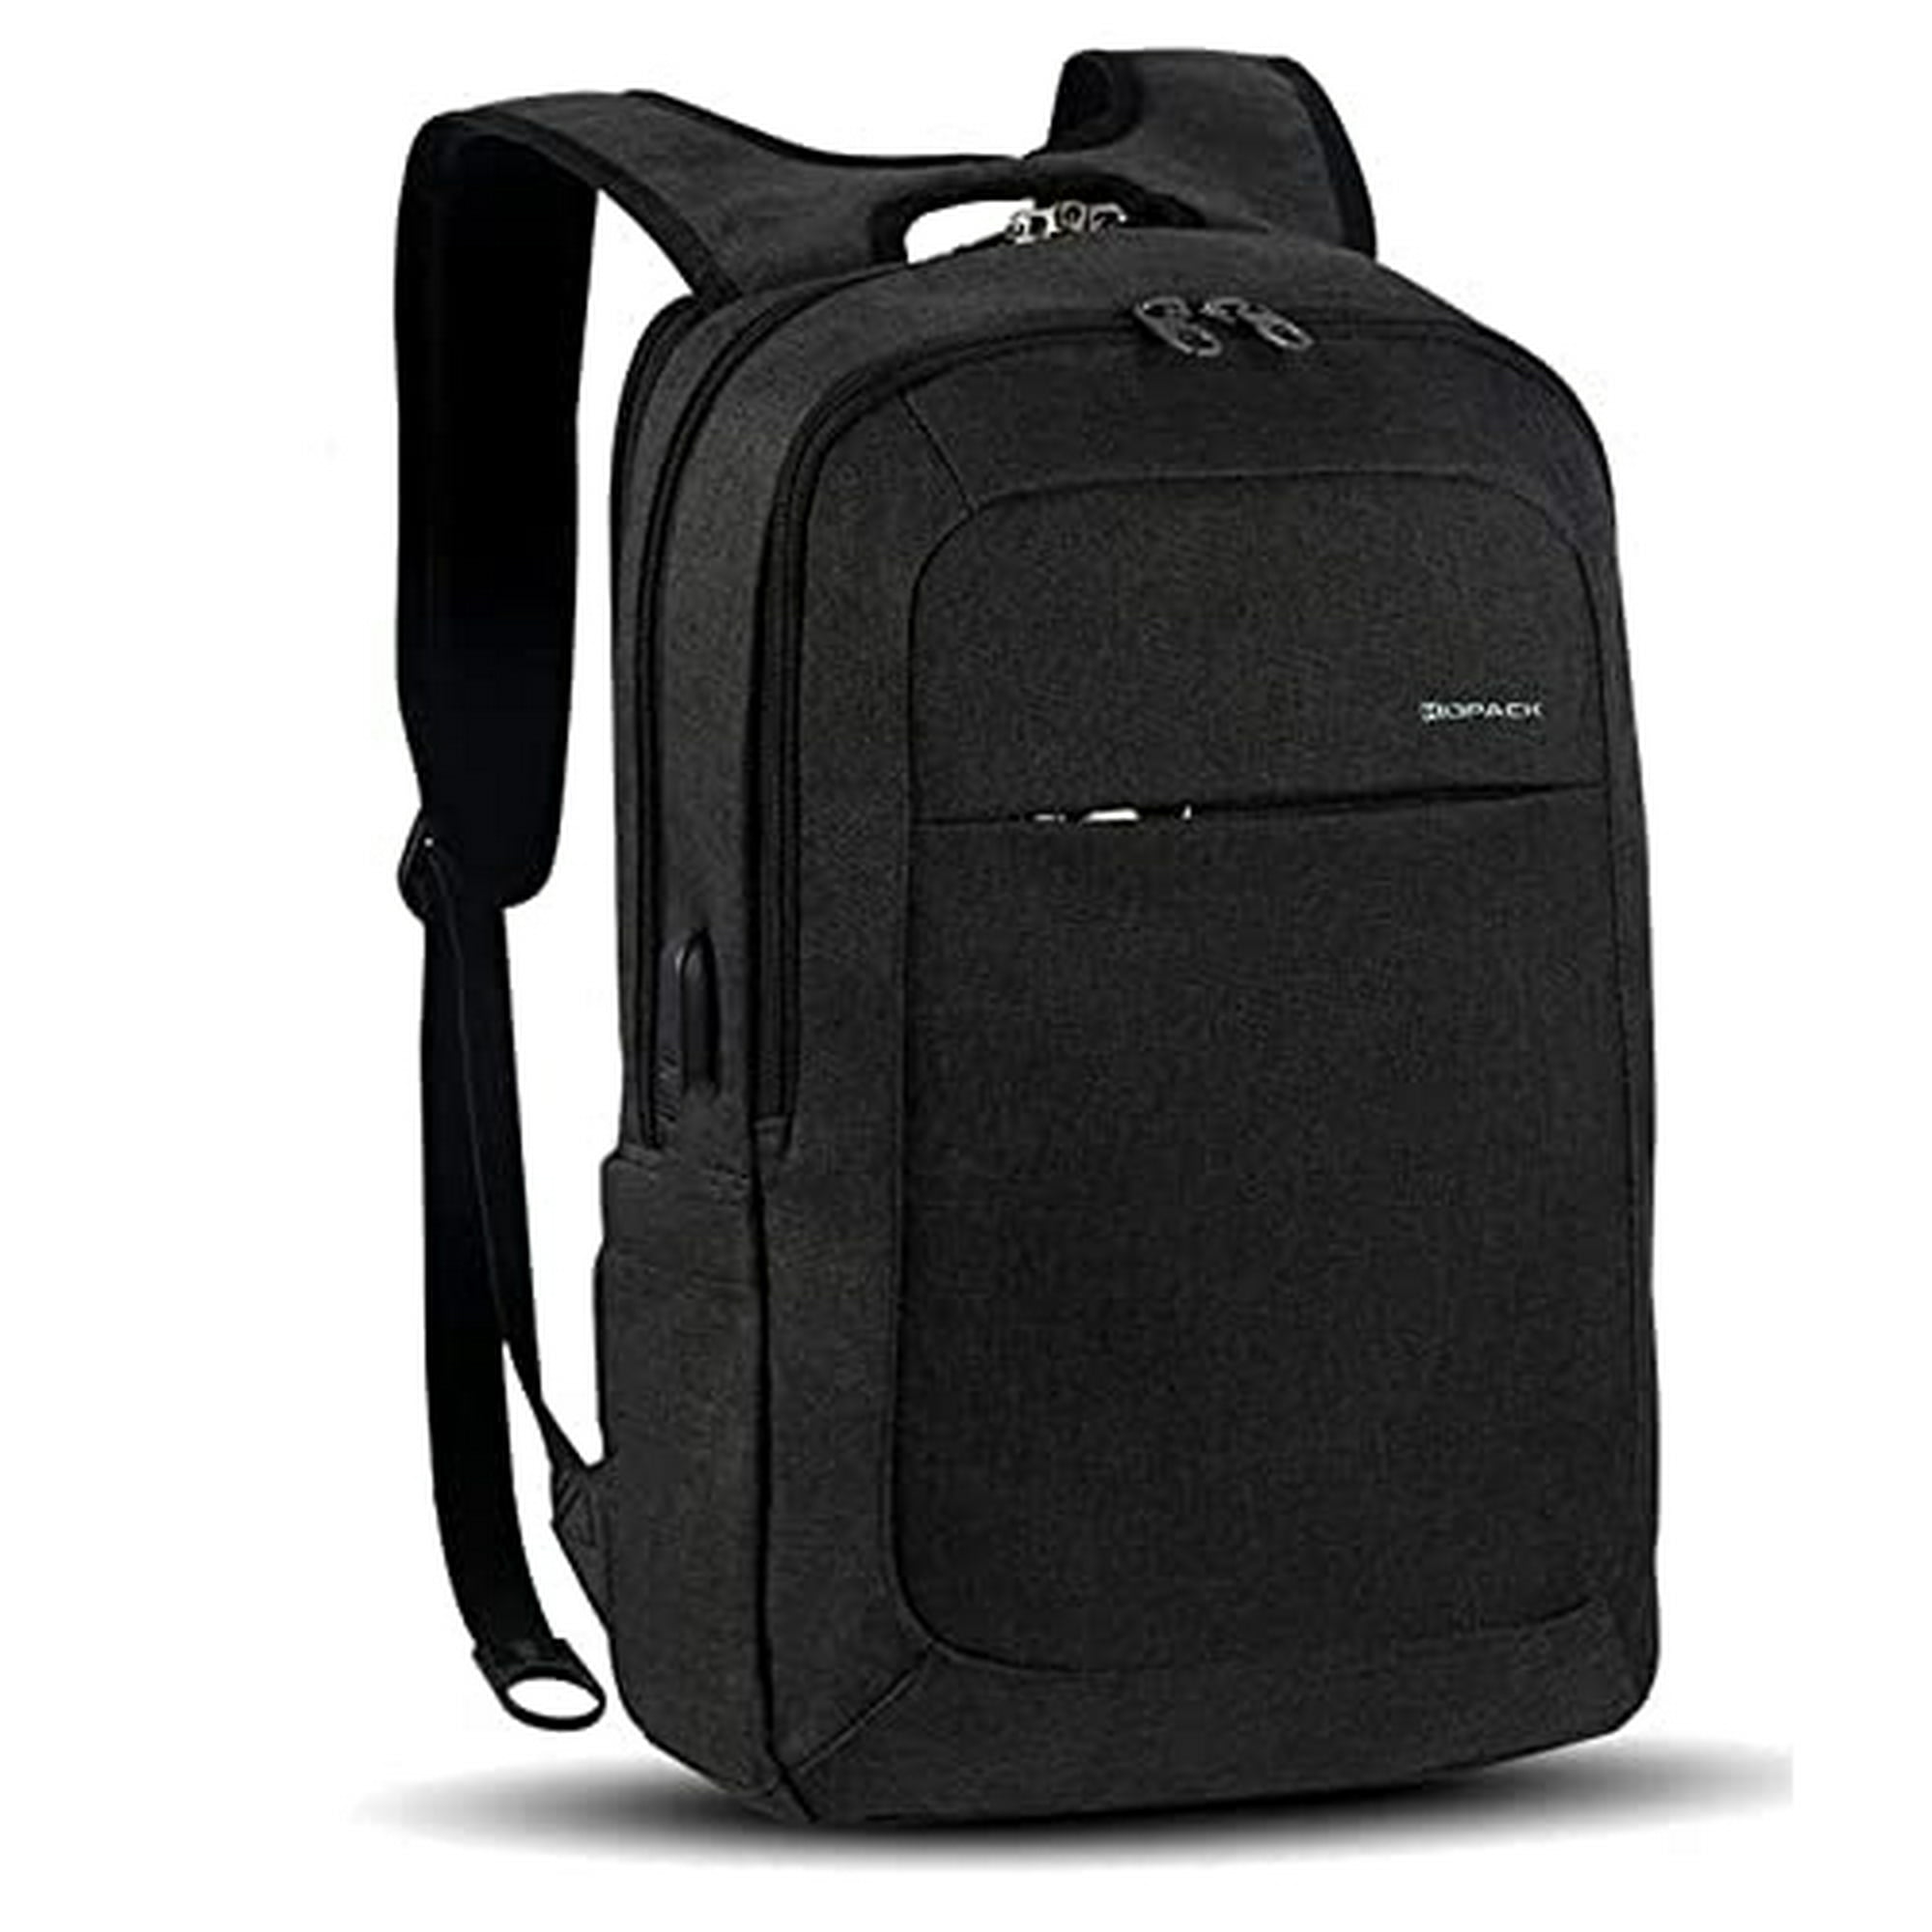 Mochila para laptop de 15.6 pulgadas, resistente al agua, mochila duradera  de viaje universitario, antirrobo con puerto de carga USB, el mejor regalo